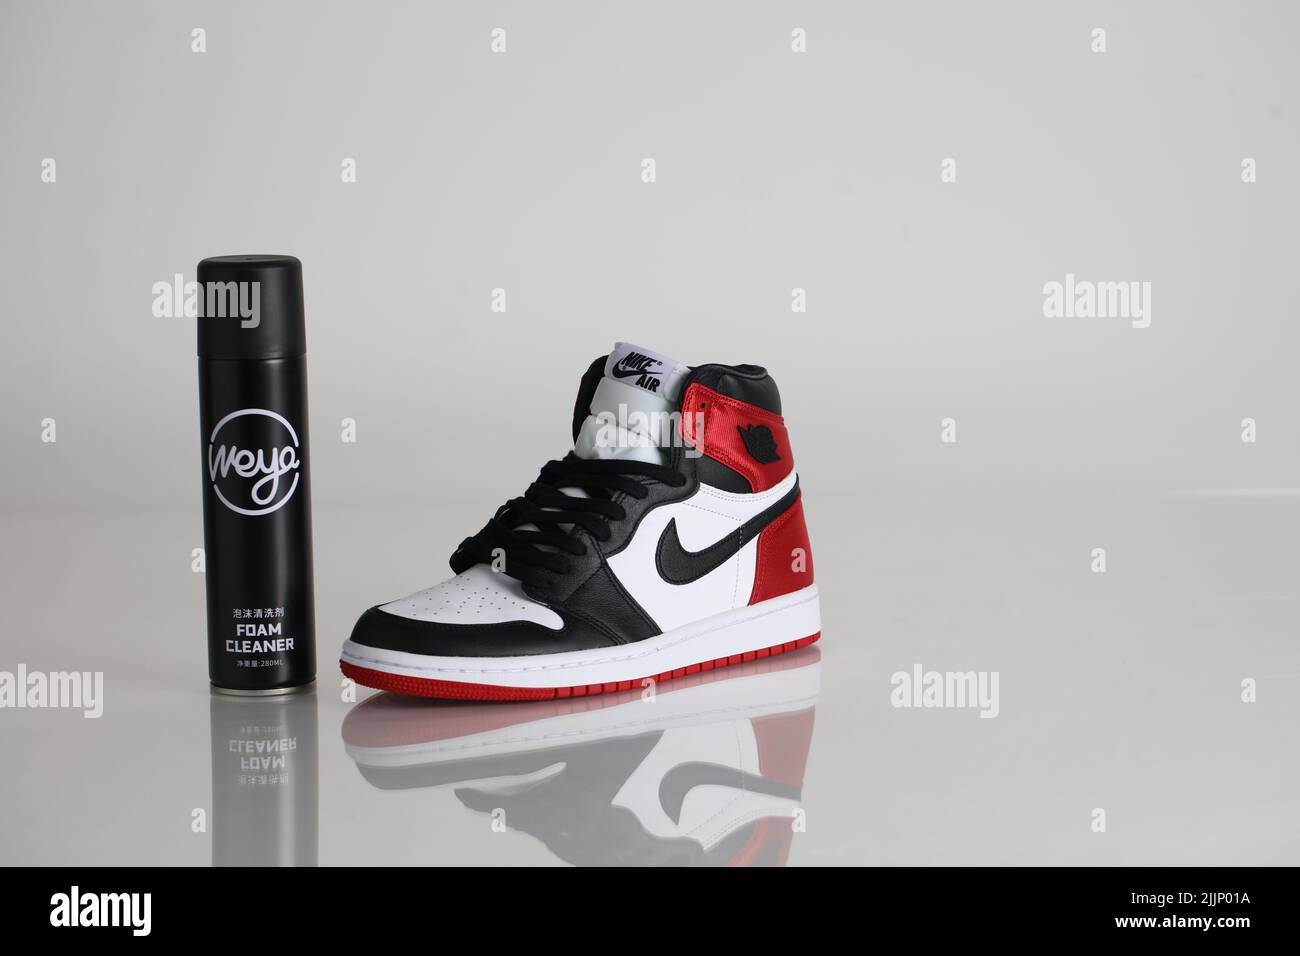 Nike air jordan disegno immagini e fotografie stock ad alta risoluzione -  Alamy